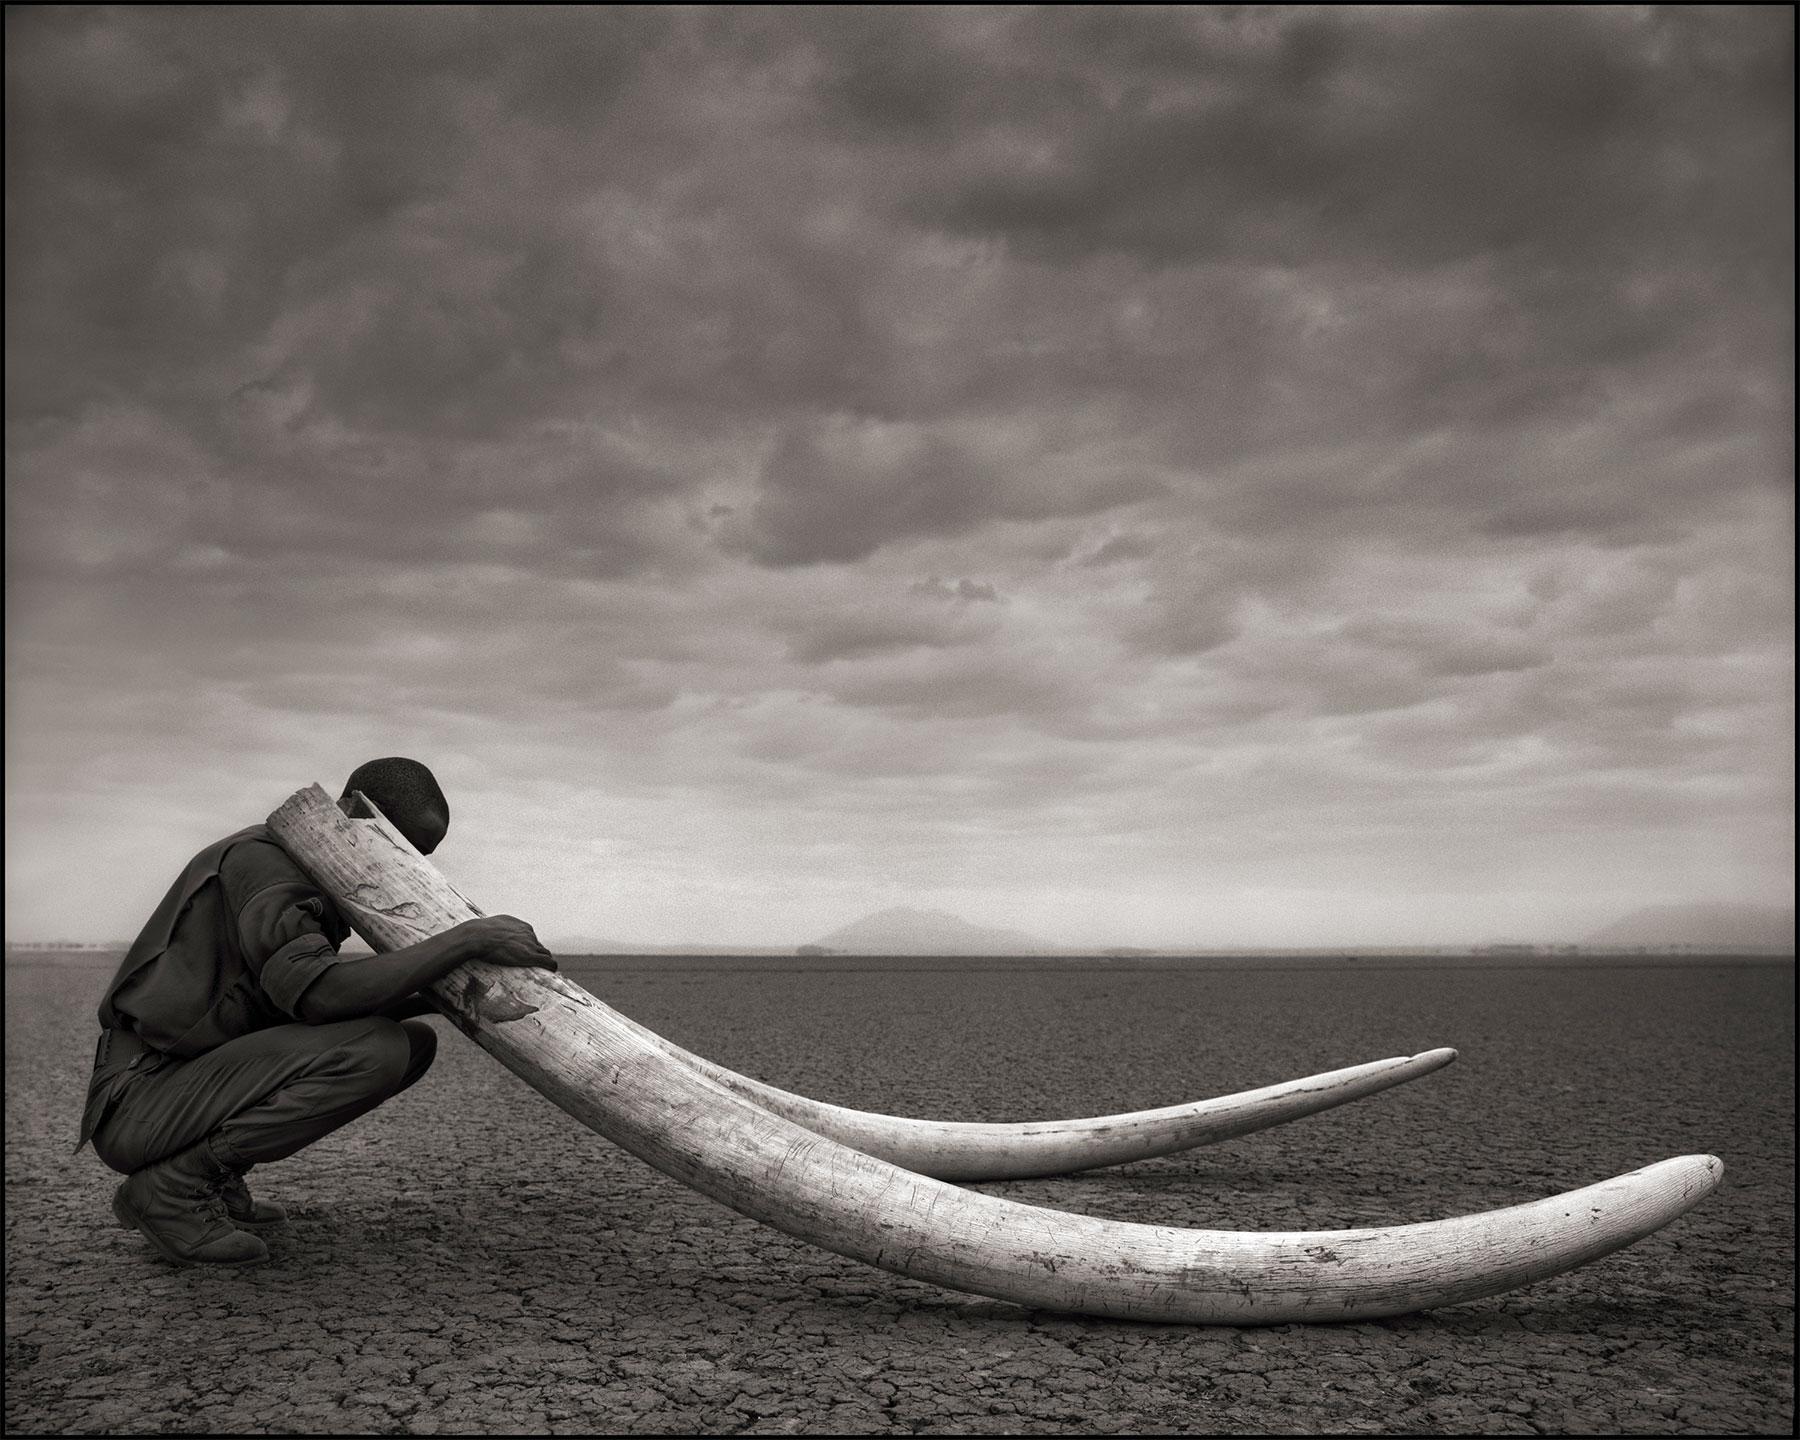 NICK BRANDT (*1966, England)
Ranger mit Stoßzähnen eines getöteten Elefanten, Amboseli
2011
Archivierungs-Pigmentdruck
Blatt 142,24 x 177,8 cm (56 x 70 in.)
Auflage 8/10 (aus einer ausverkauften Auflage)

Nick Brandt ist ein zeitgenössischer